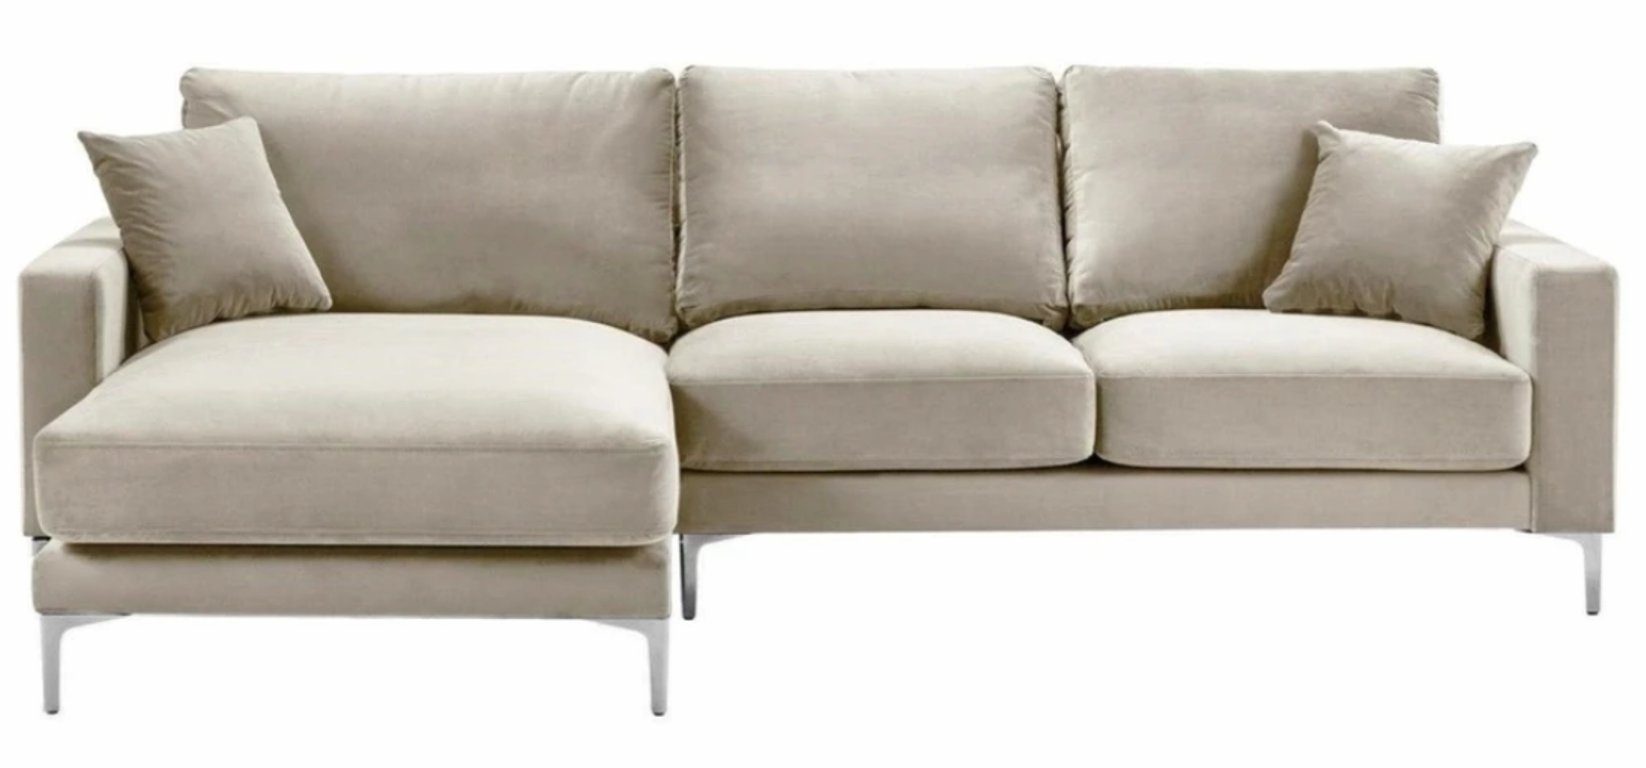 JVmoebel Ecksofa Sofa modernes Brandneu, L-Form Luxus Europe Eckcouch Polstermöbel in Beige Made